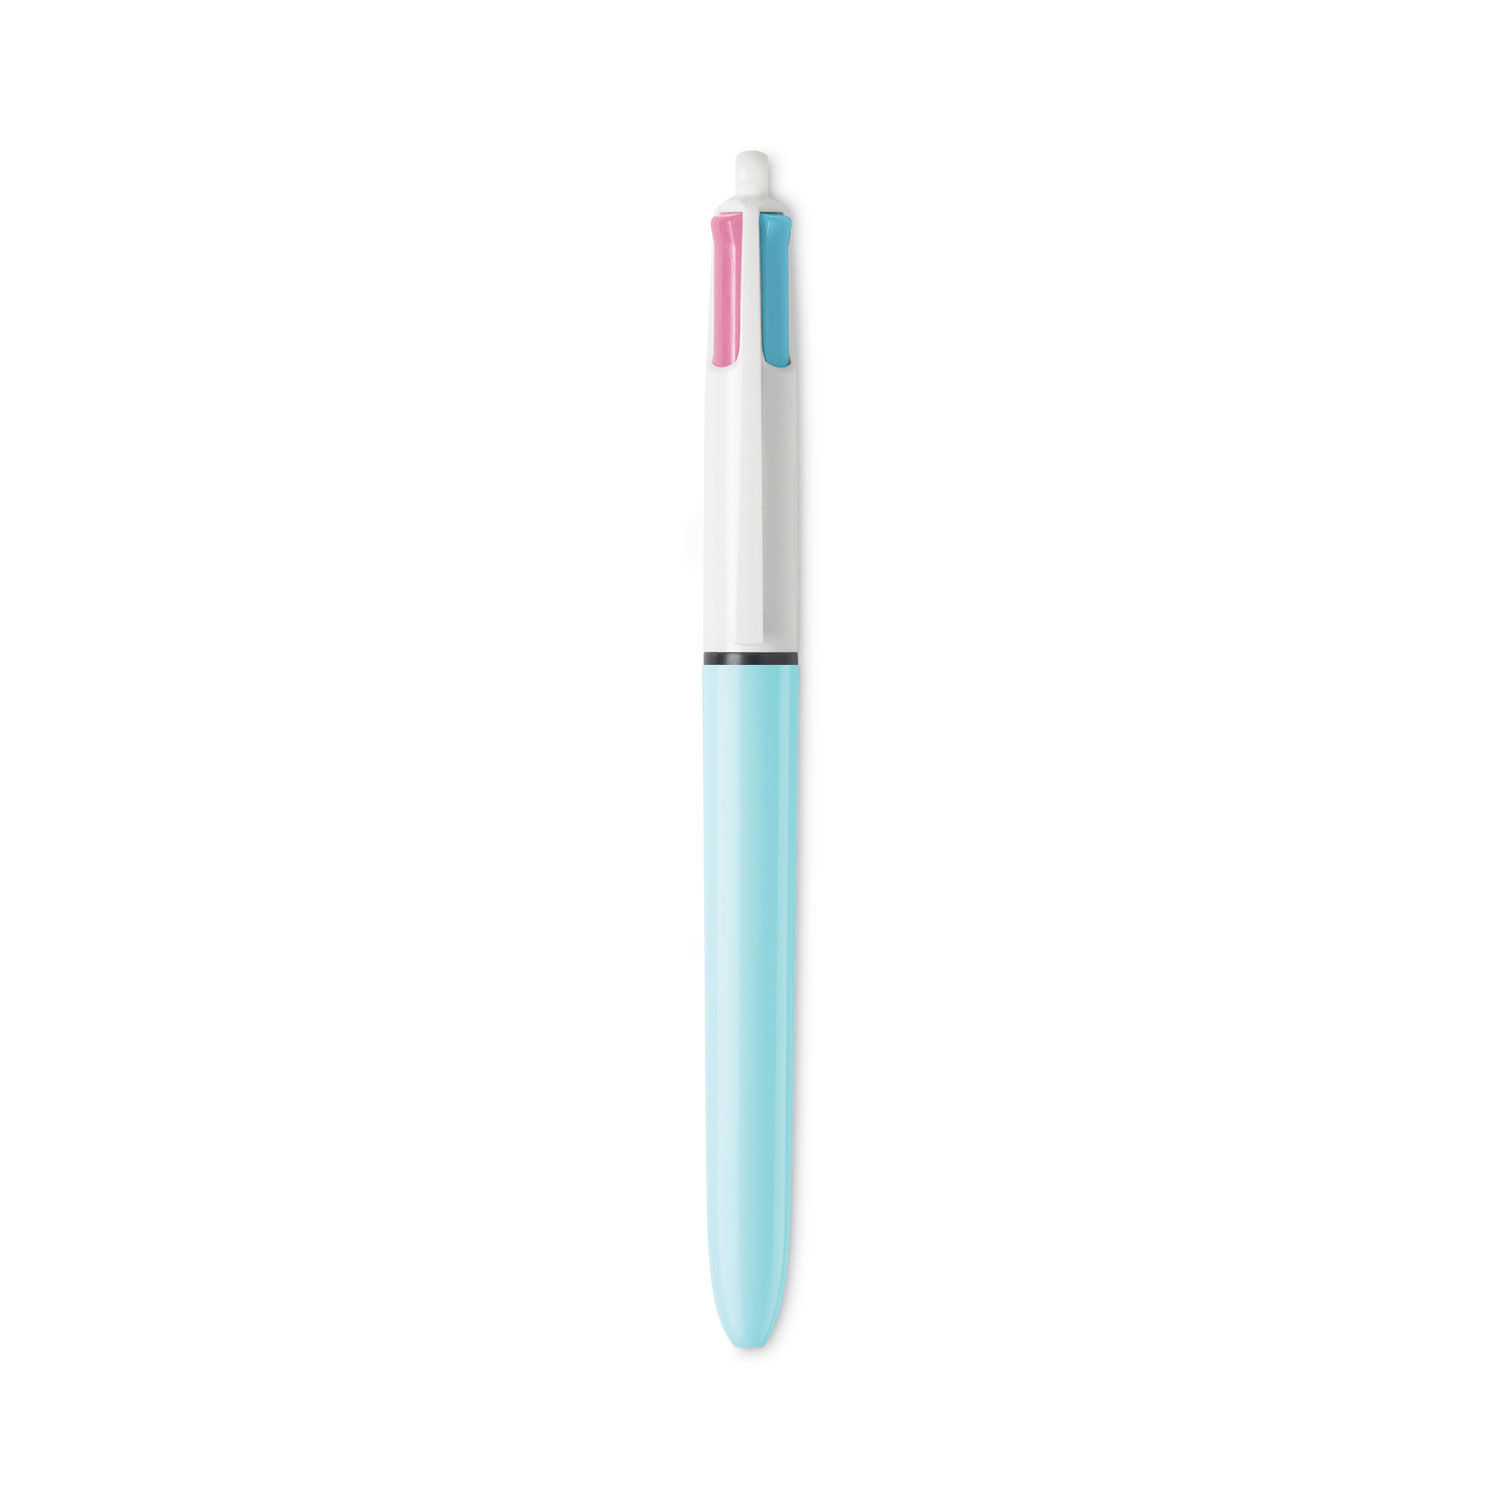 Exp. 20 Bic pens 4 Rosé colors Online Wholesale